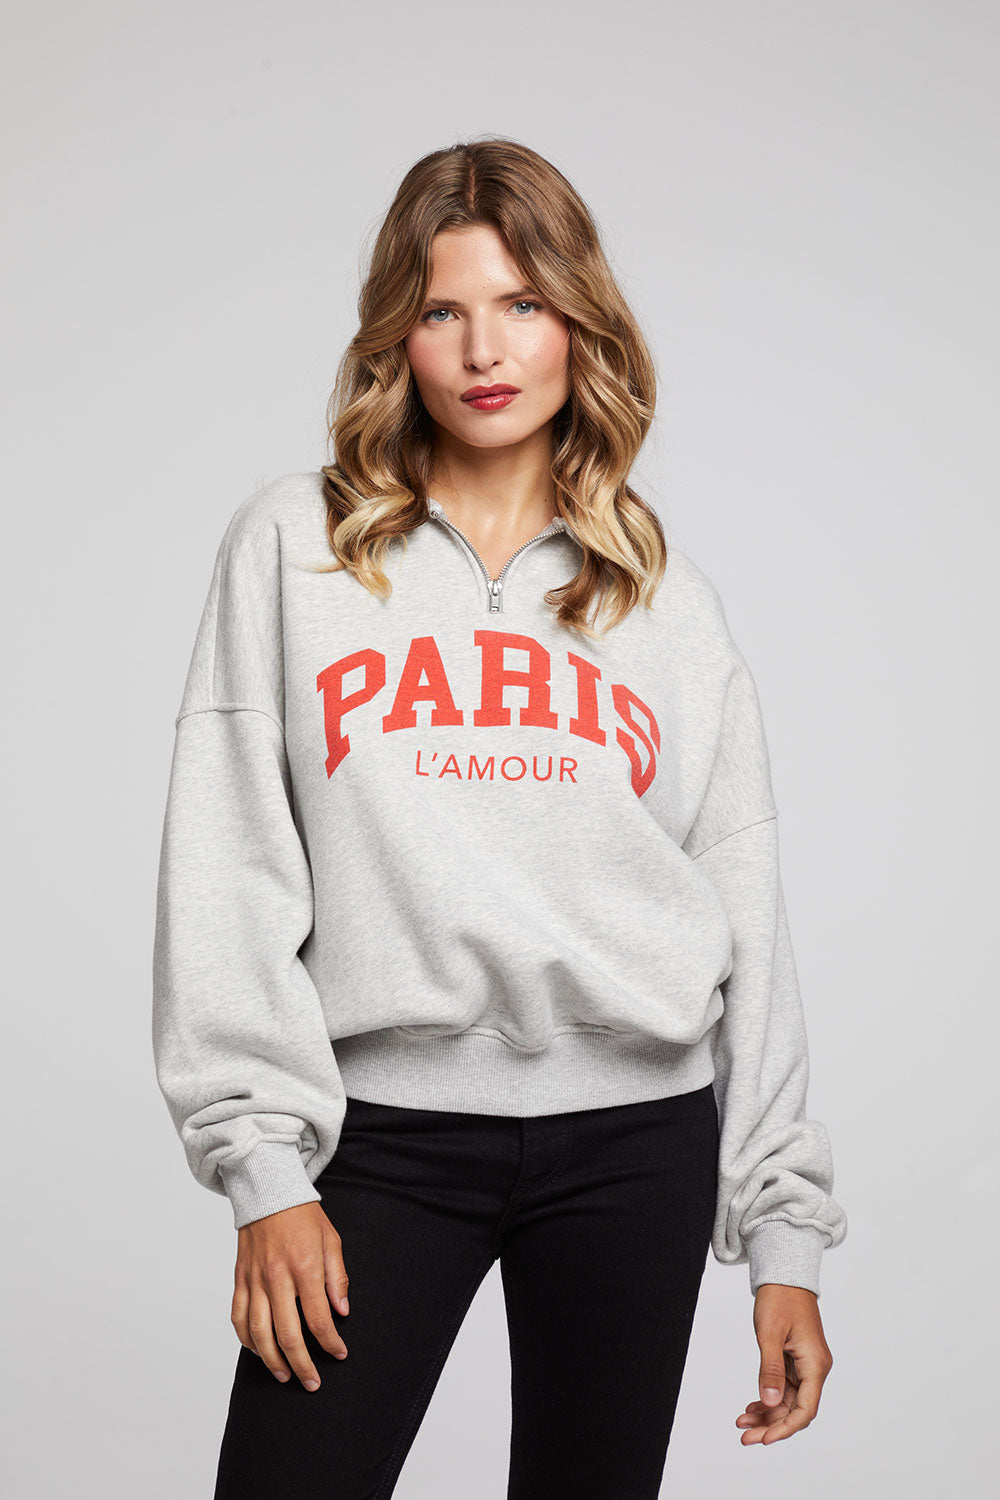 Paris L’ Amour Sweatshirt